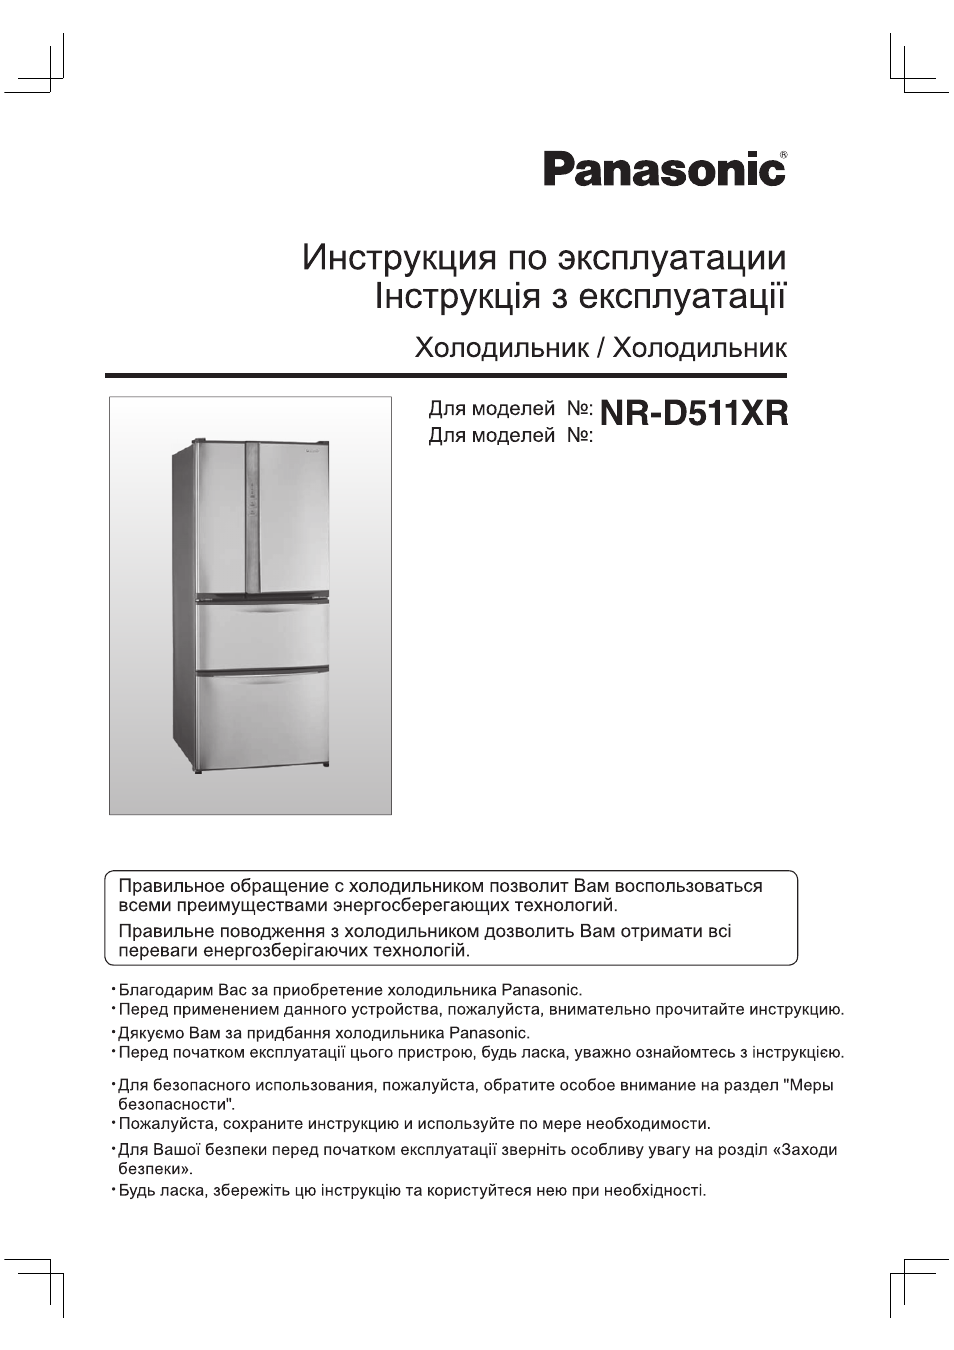 Инструкция по эксплуатации Panasonic NR-D511XR-S8 | 32 страницы